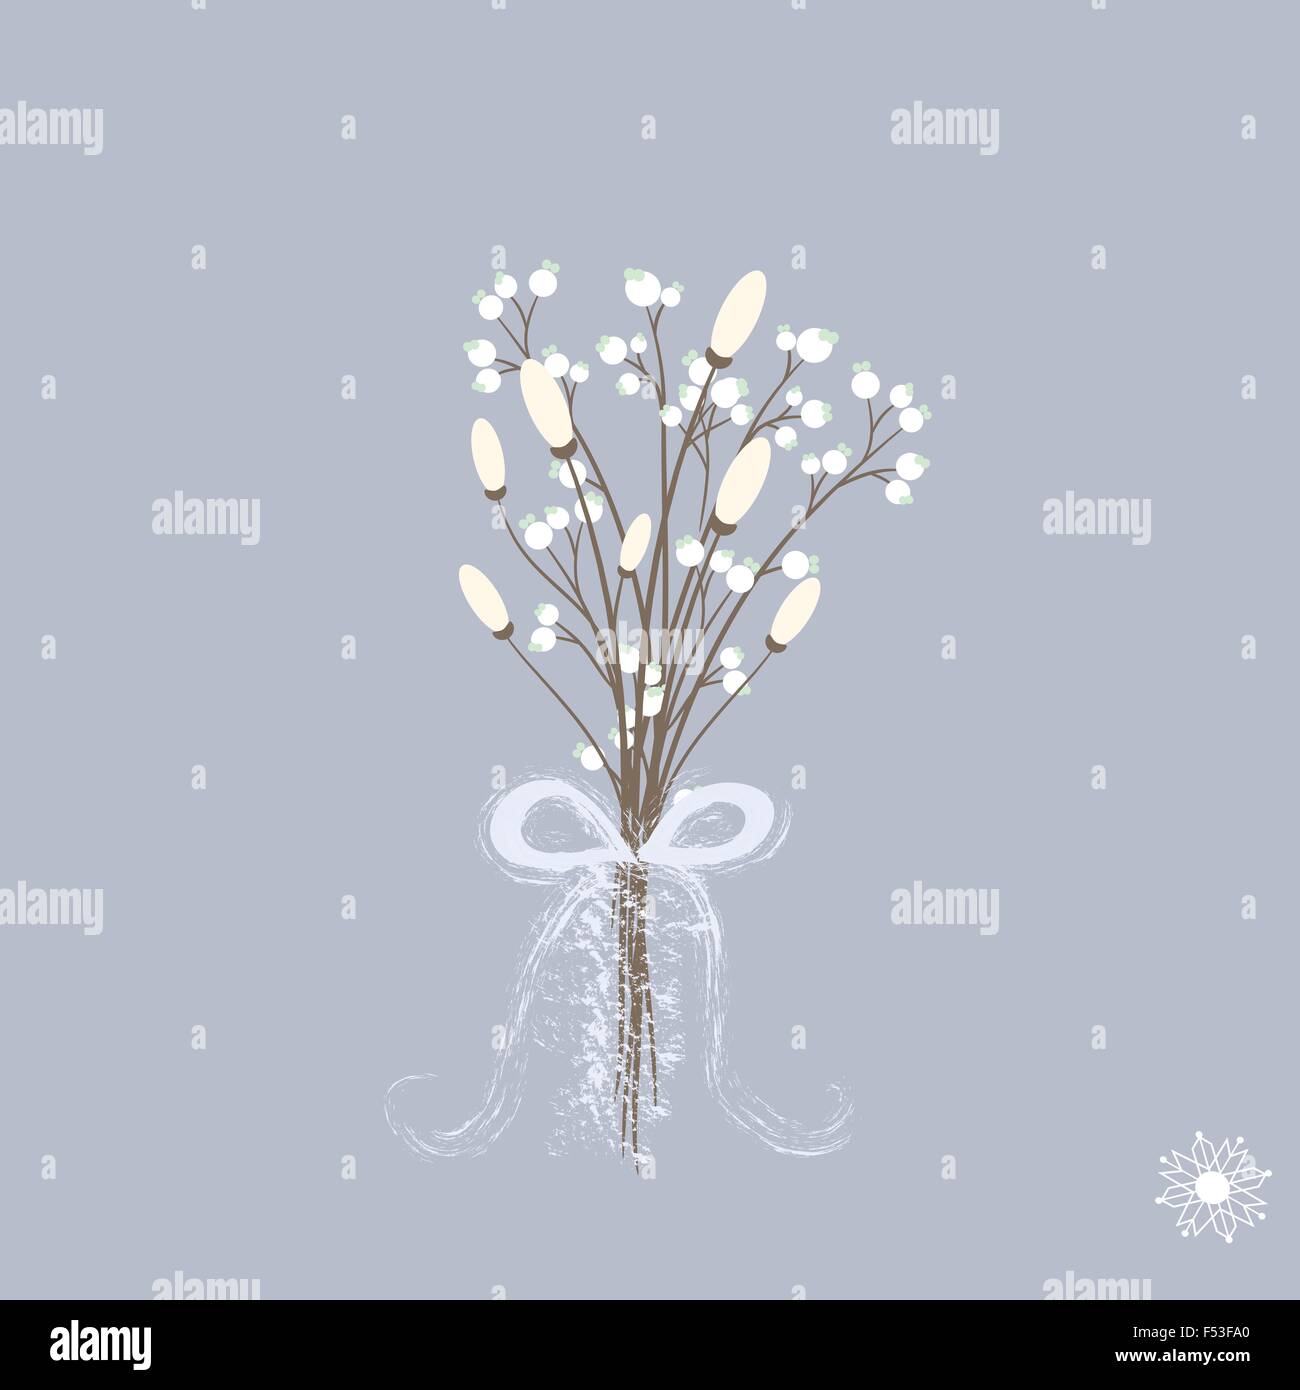 Vektor-Illustration von schönen Winter Blumenstrauß in Pastellfarben mit Band Stock Vektor